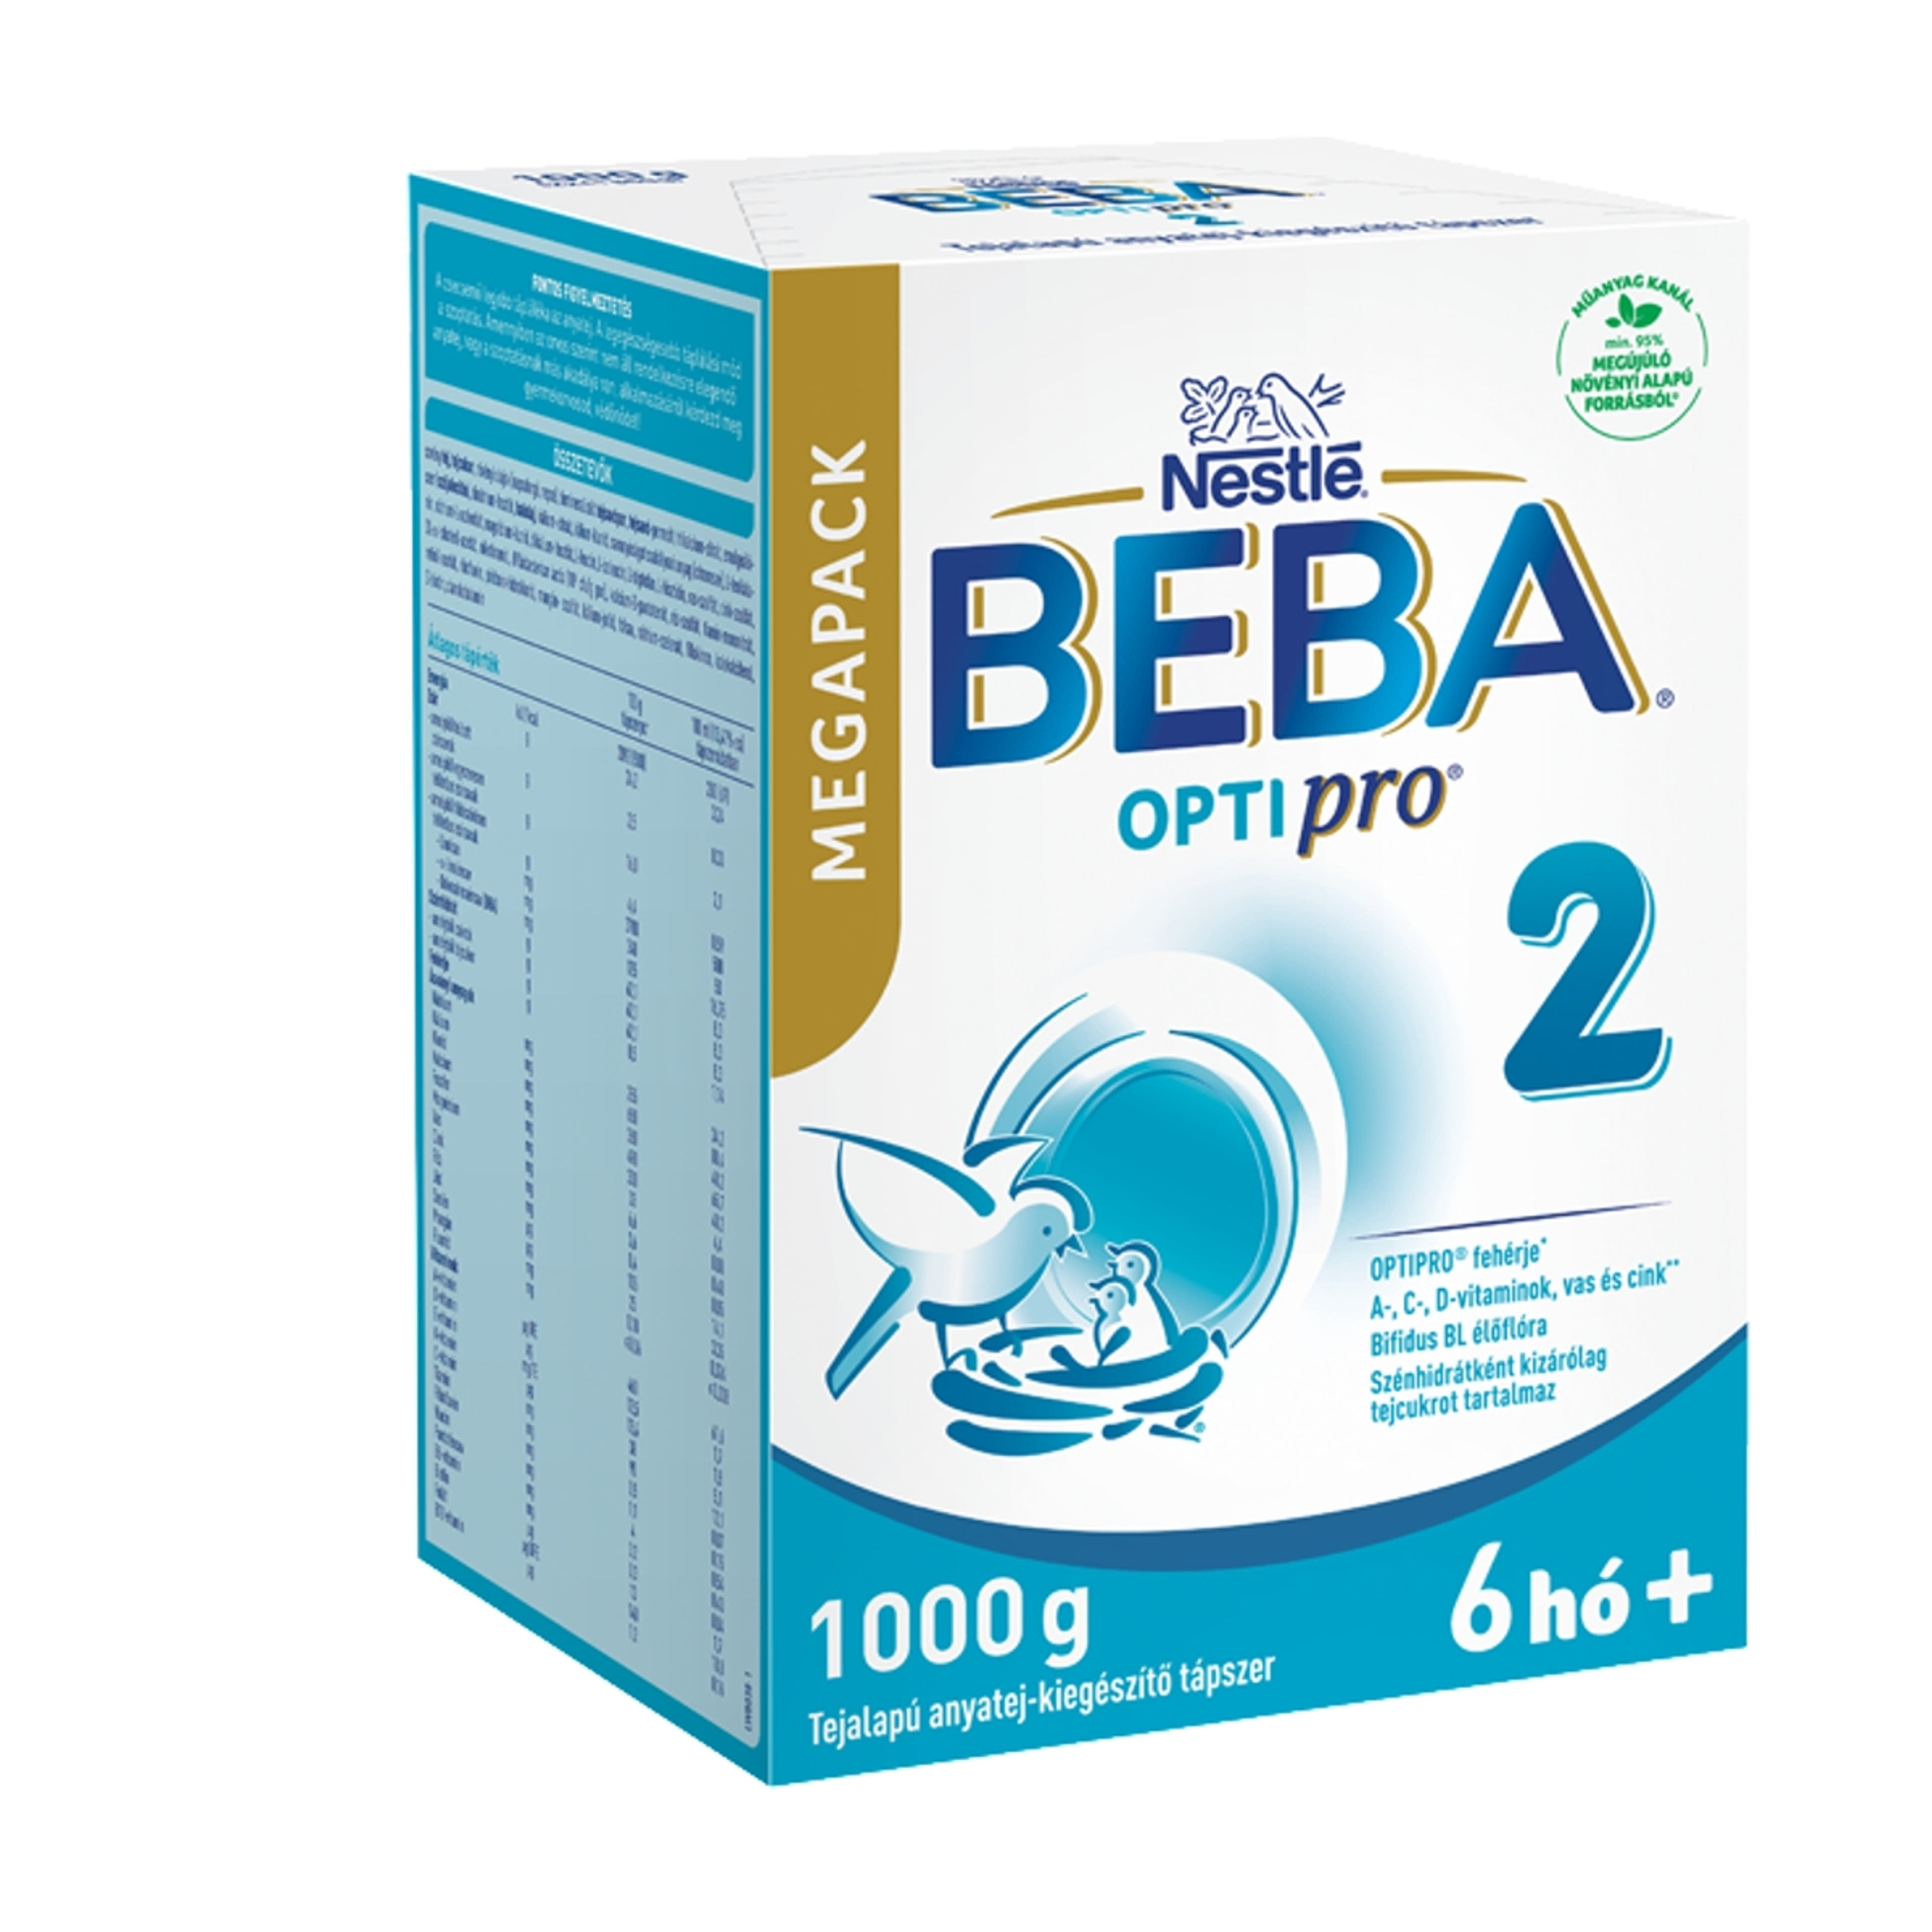 Beba Optipro 2 tejalapú anyatej-kiegészítő tápszer 6 hónapos kortól - 1000 g-3